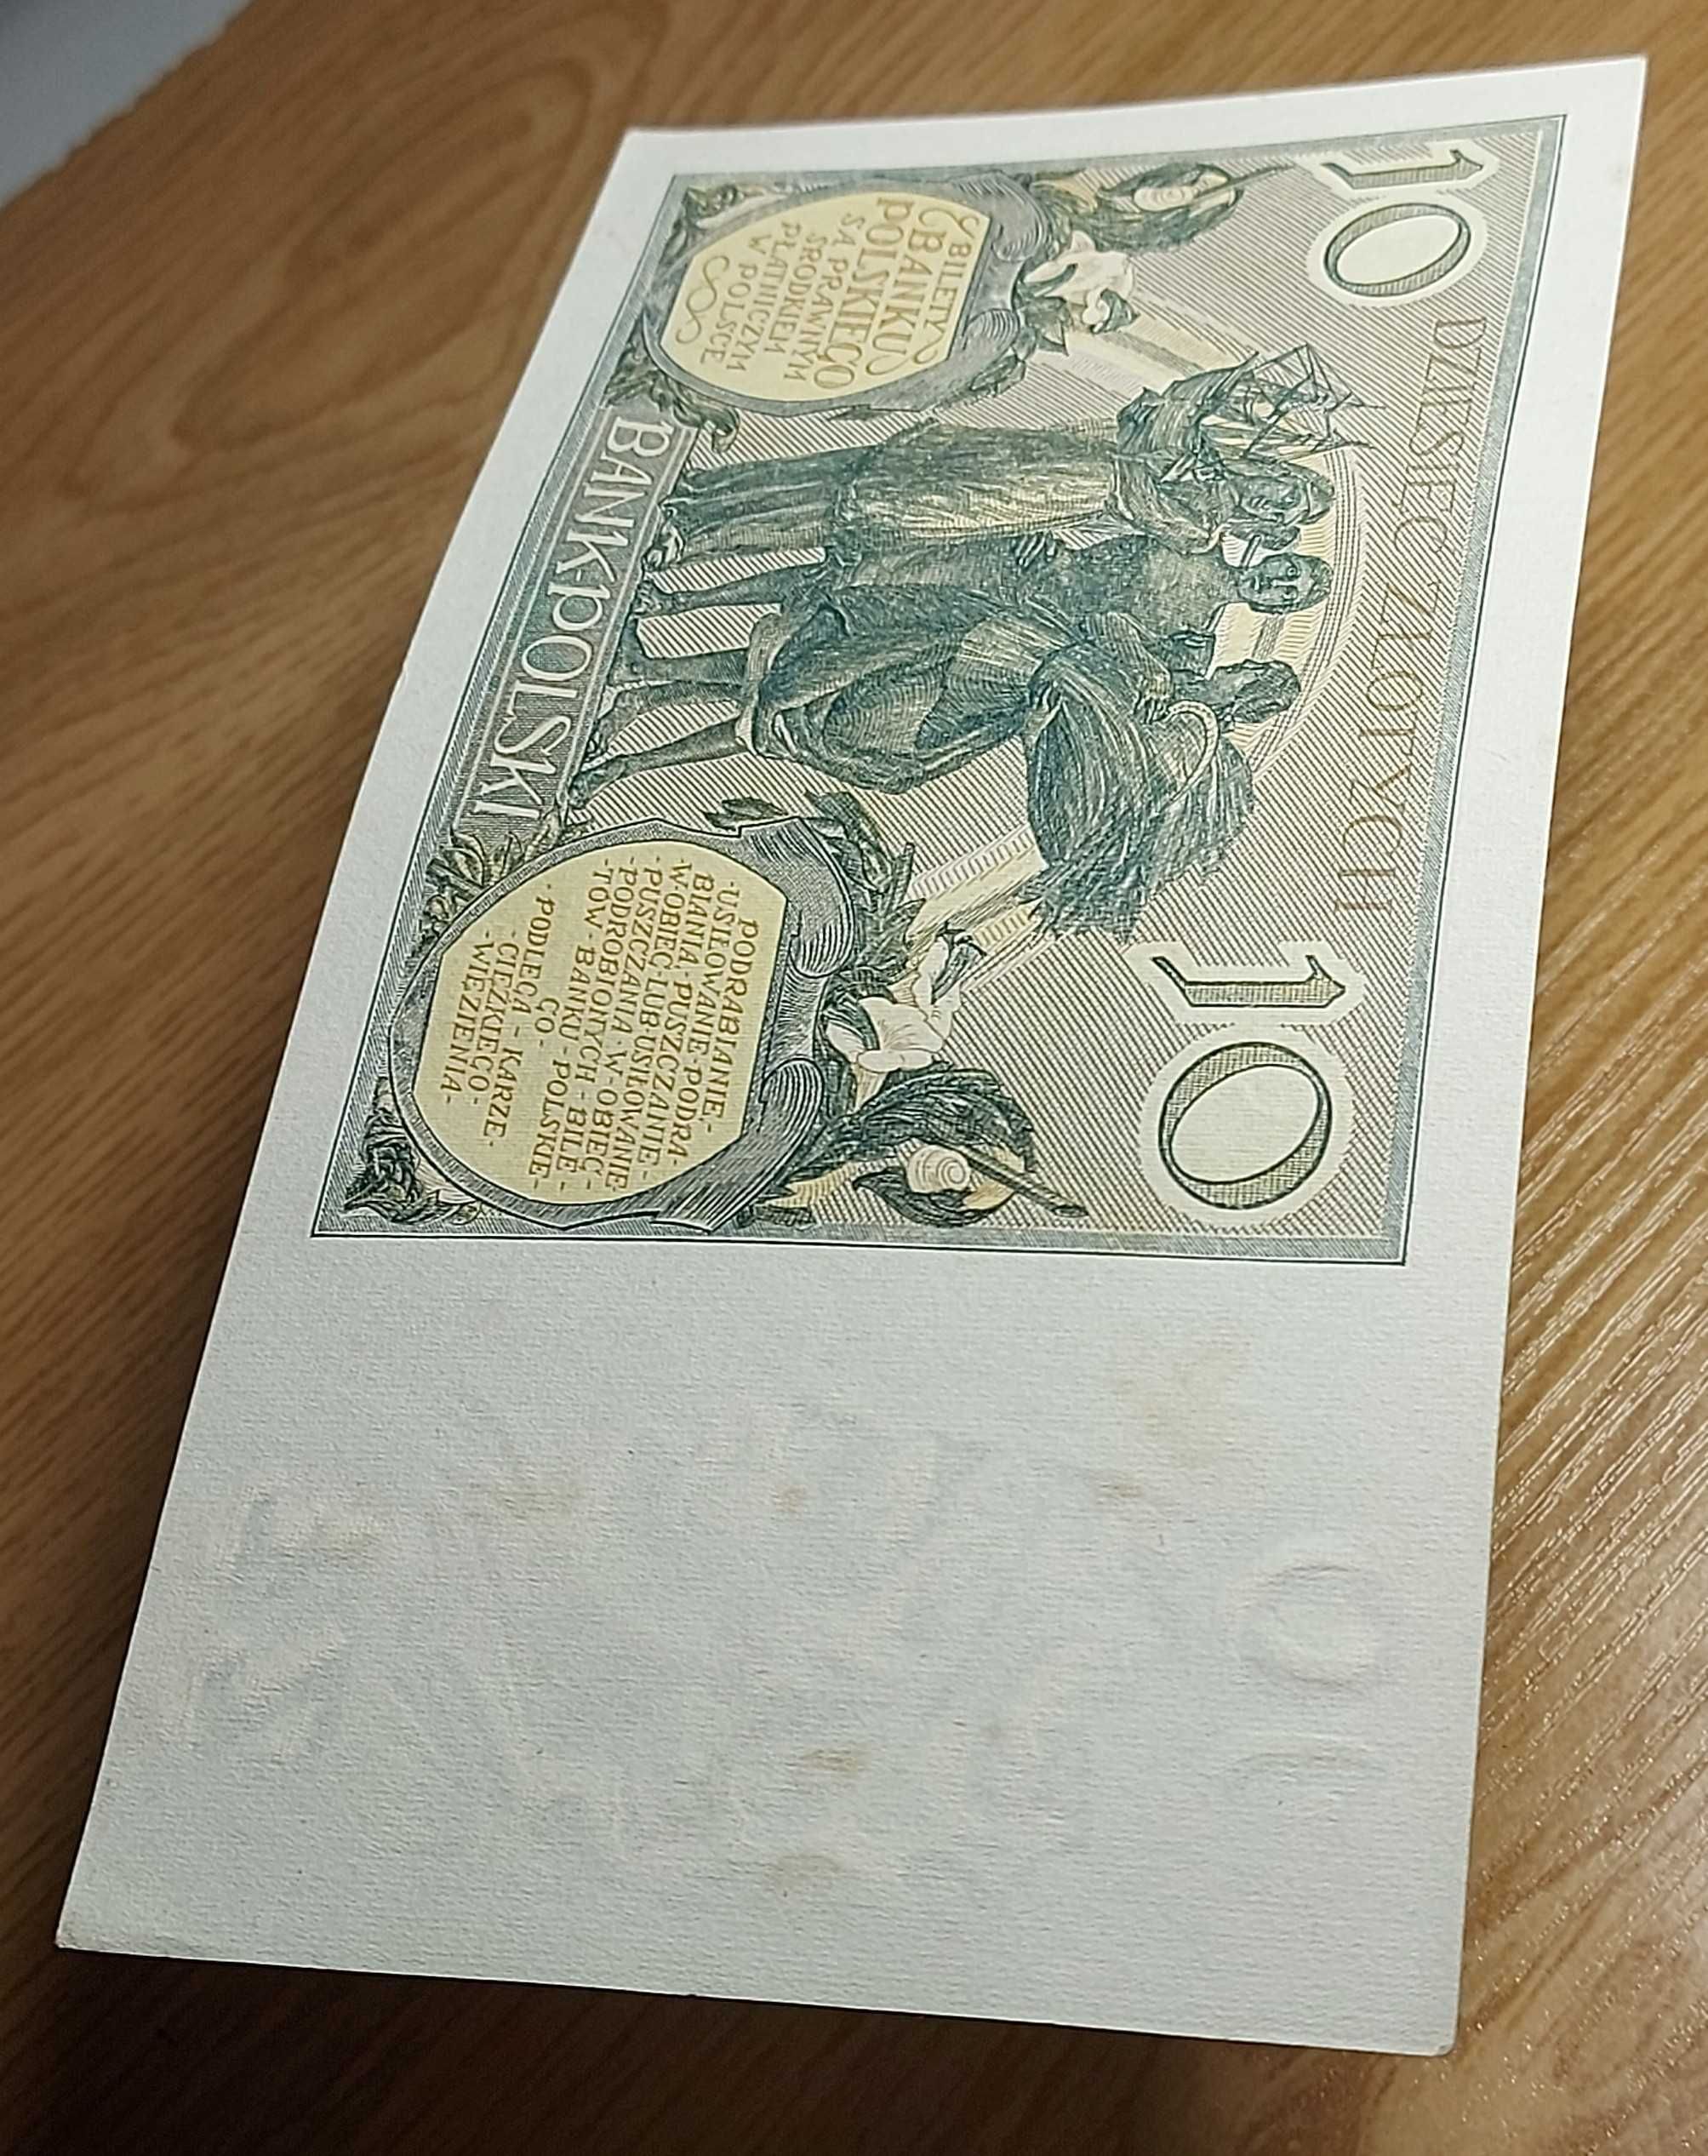 Banknot 10 złotych, emisja z roku 1929.